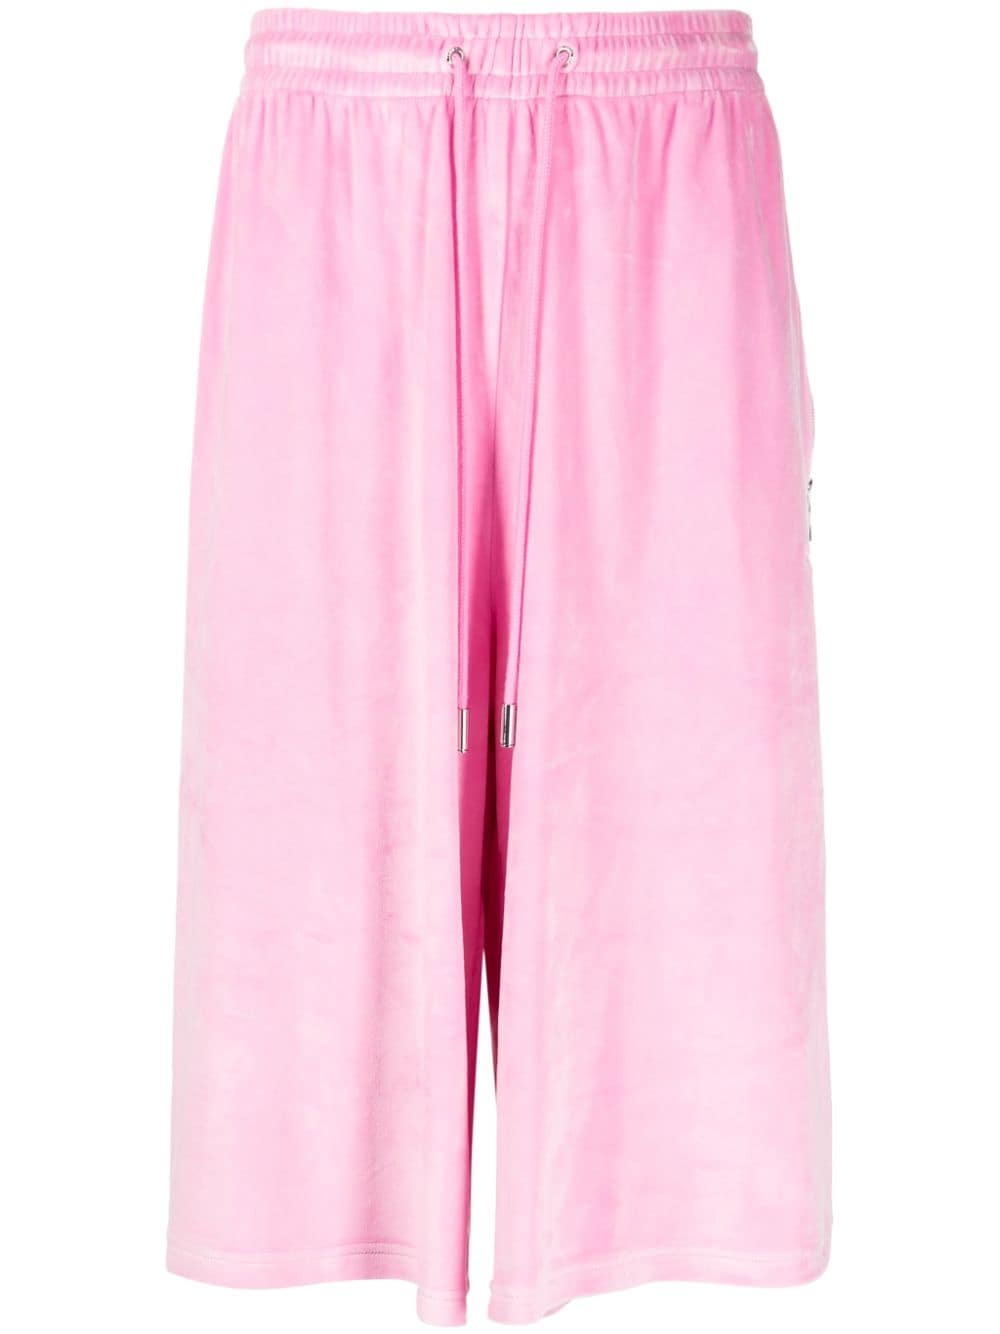 TEAM WANG design brushed-effect drawstring bermuda shorts - Pink von TEAM WANG design